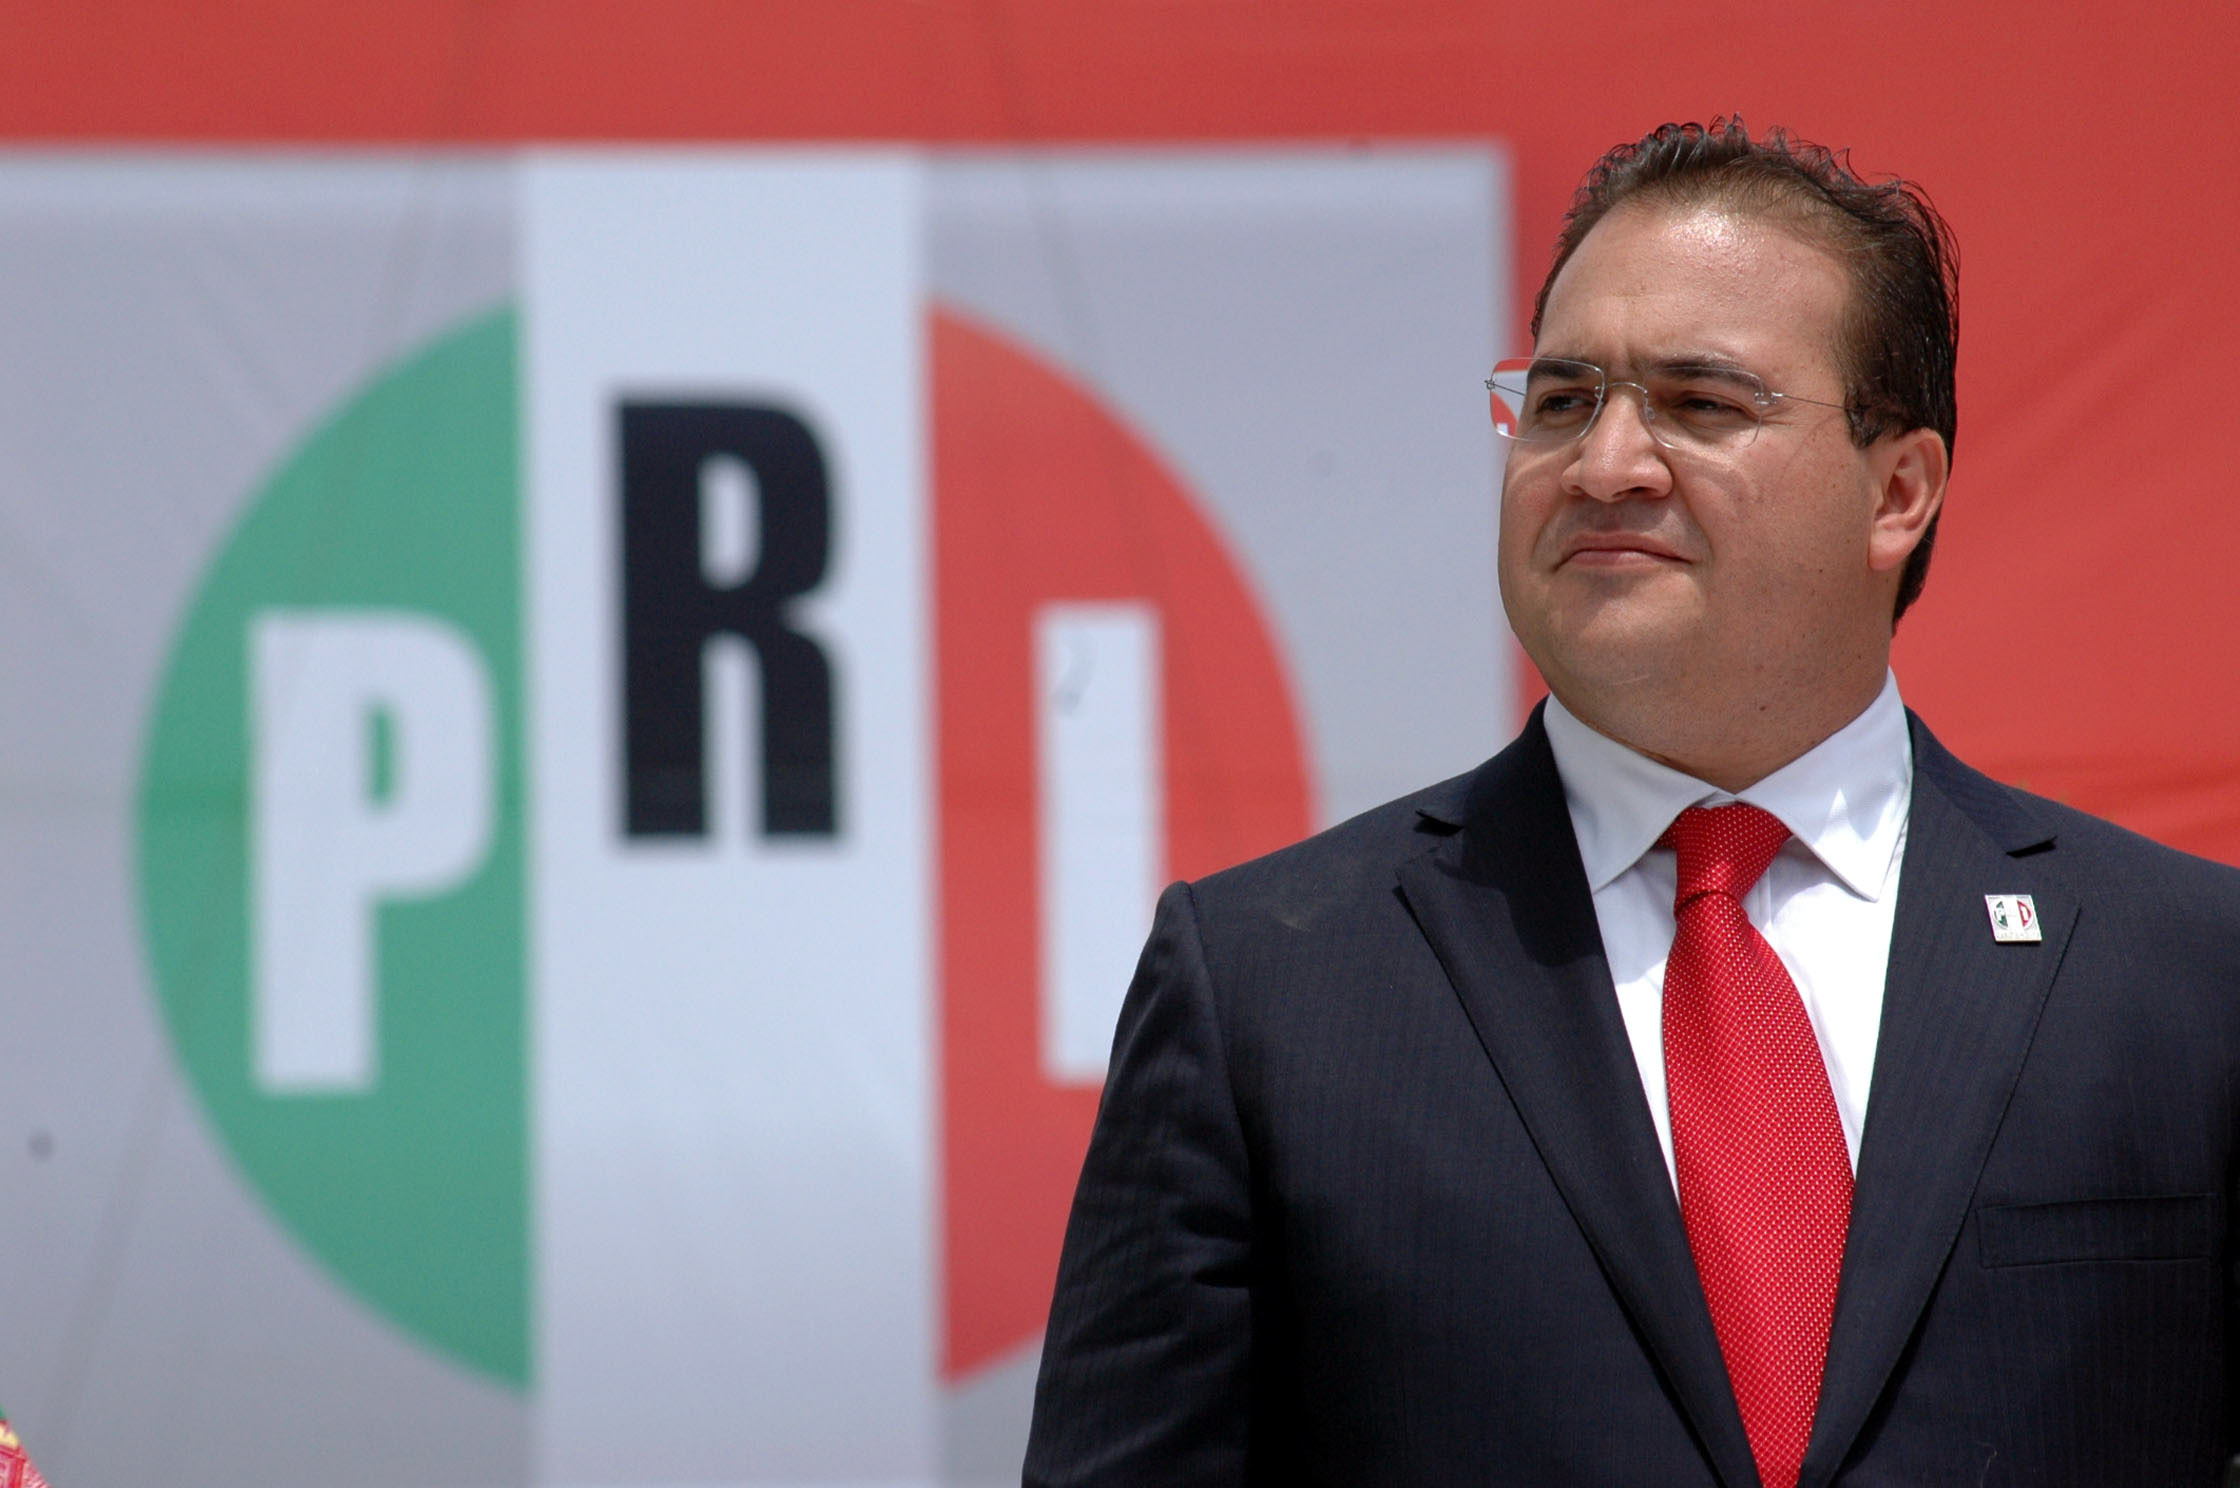  PRI alista quitar derechos políticos a Javier Duarte